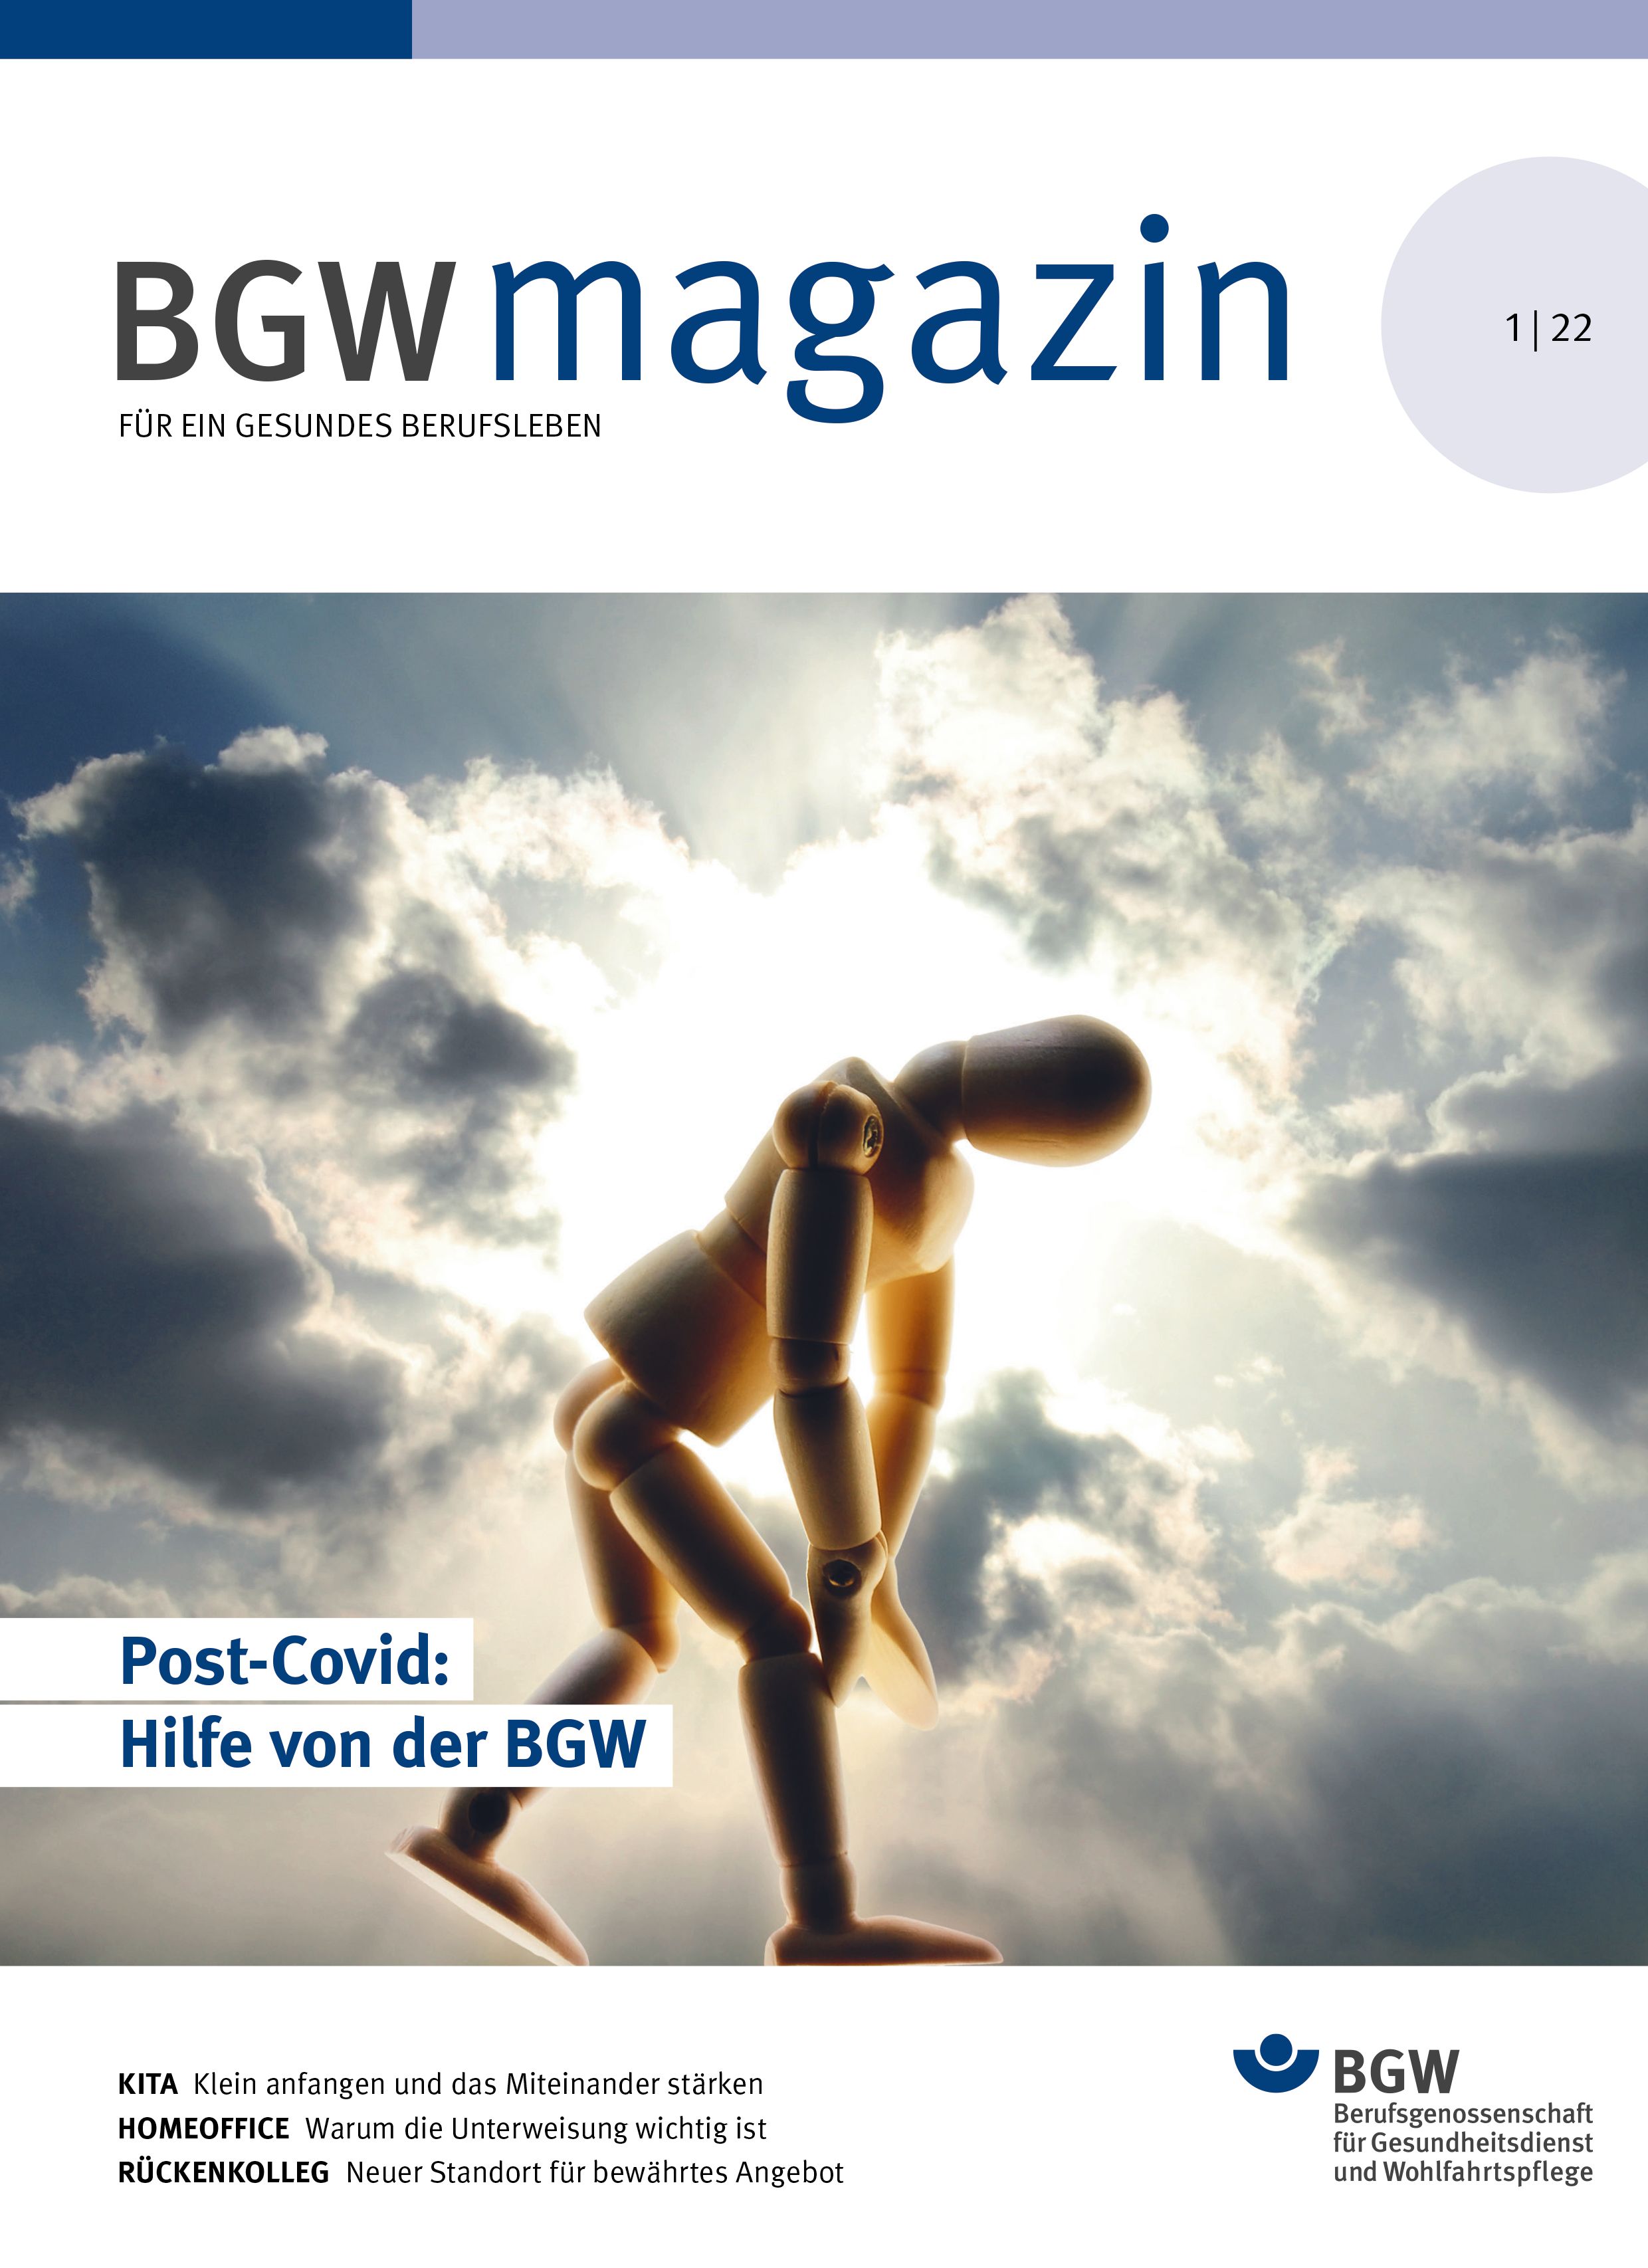 Titelseite BGW magazin, Ausgabe 1/2022 mit dem Titelthema "Post-Covid: Hilfe von der BGW"